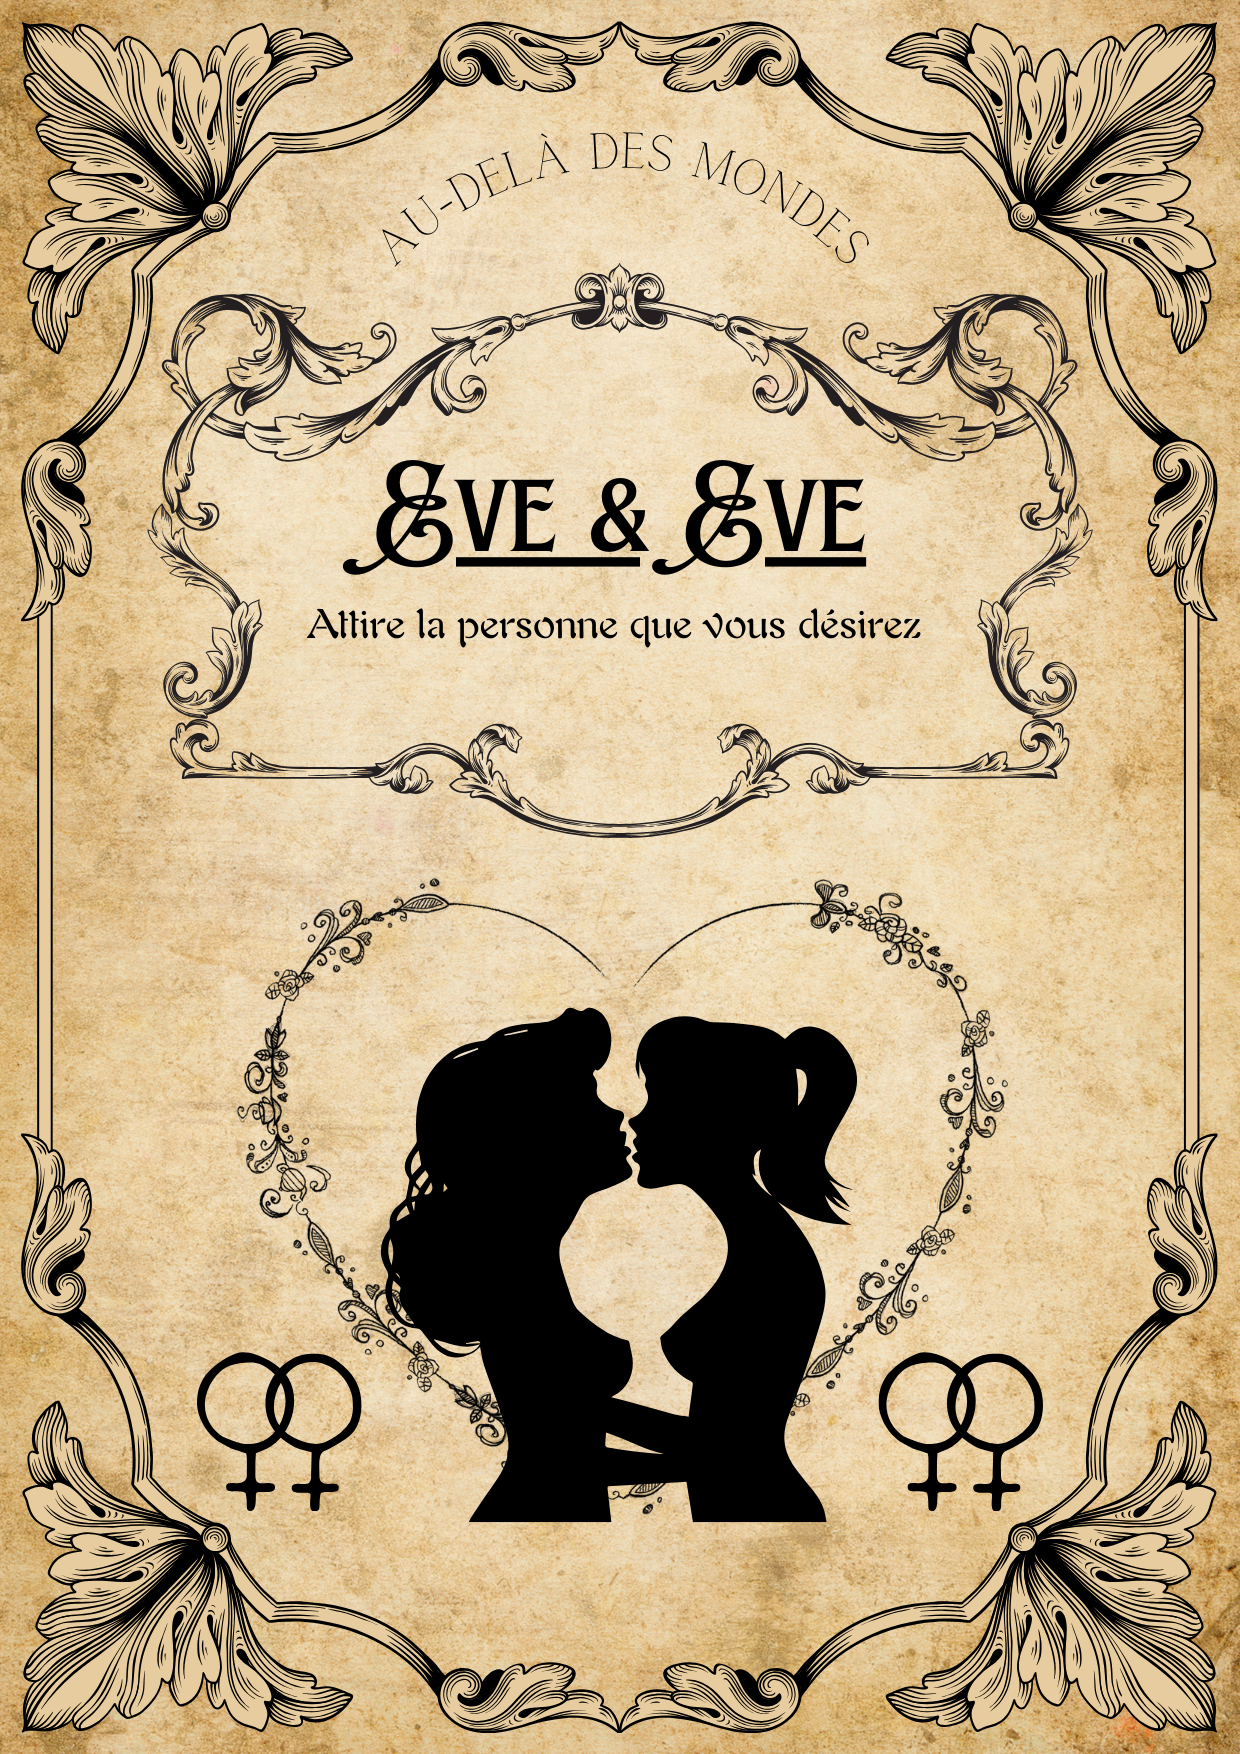 Eve & Eve